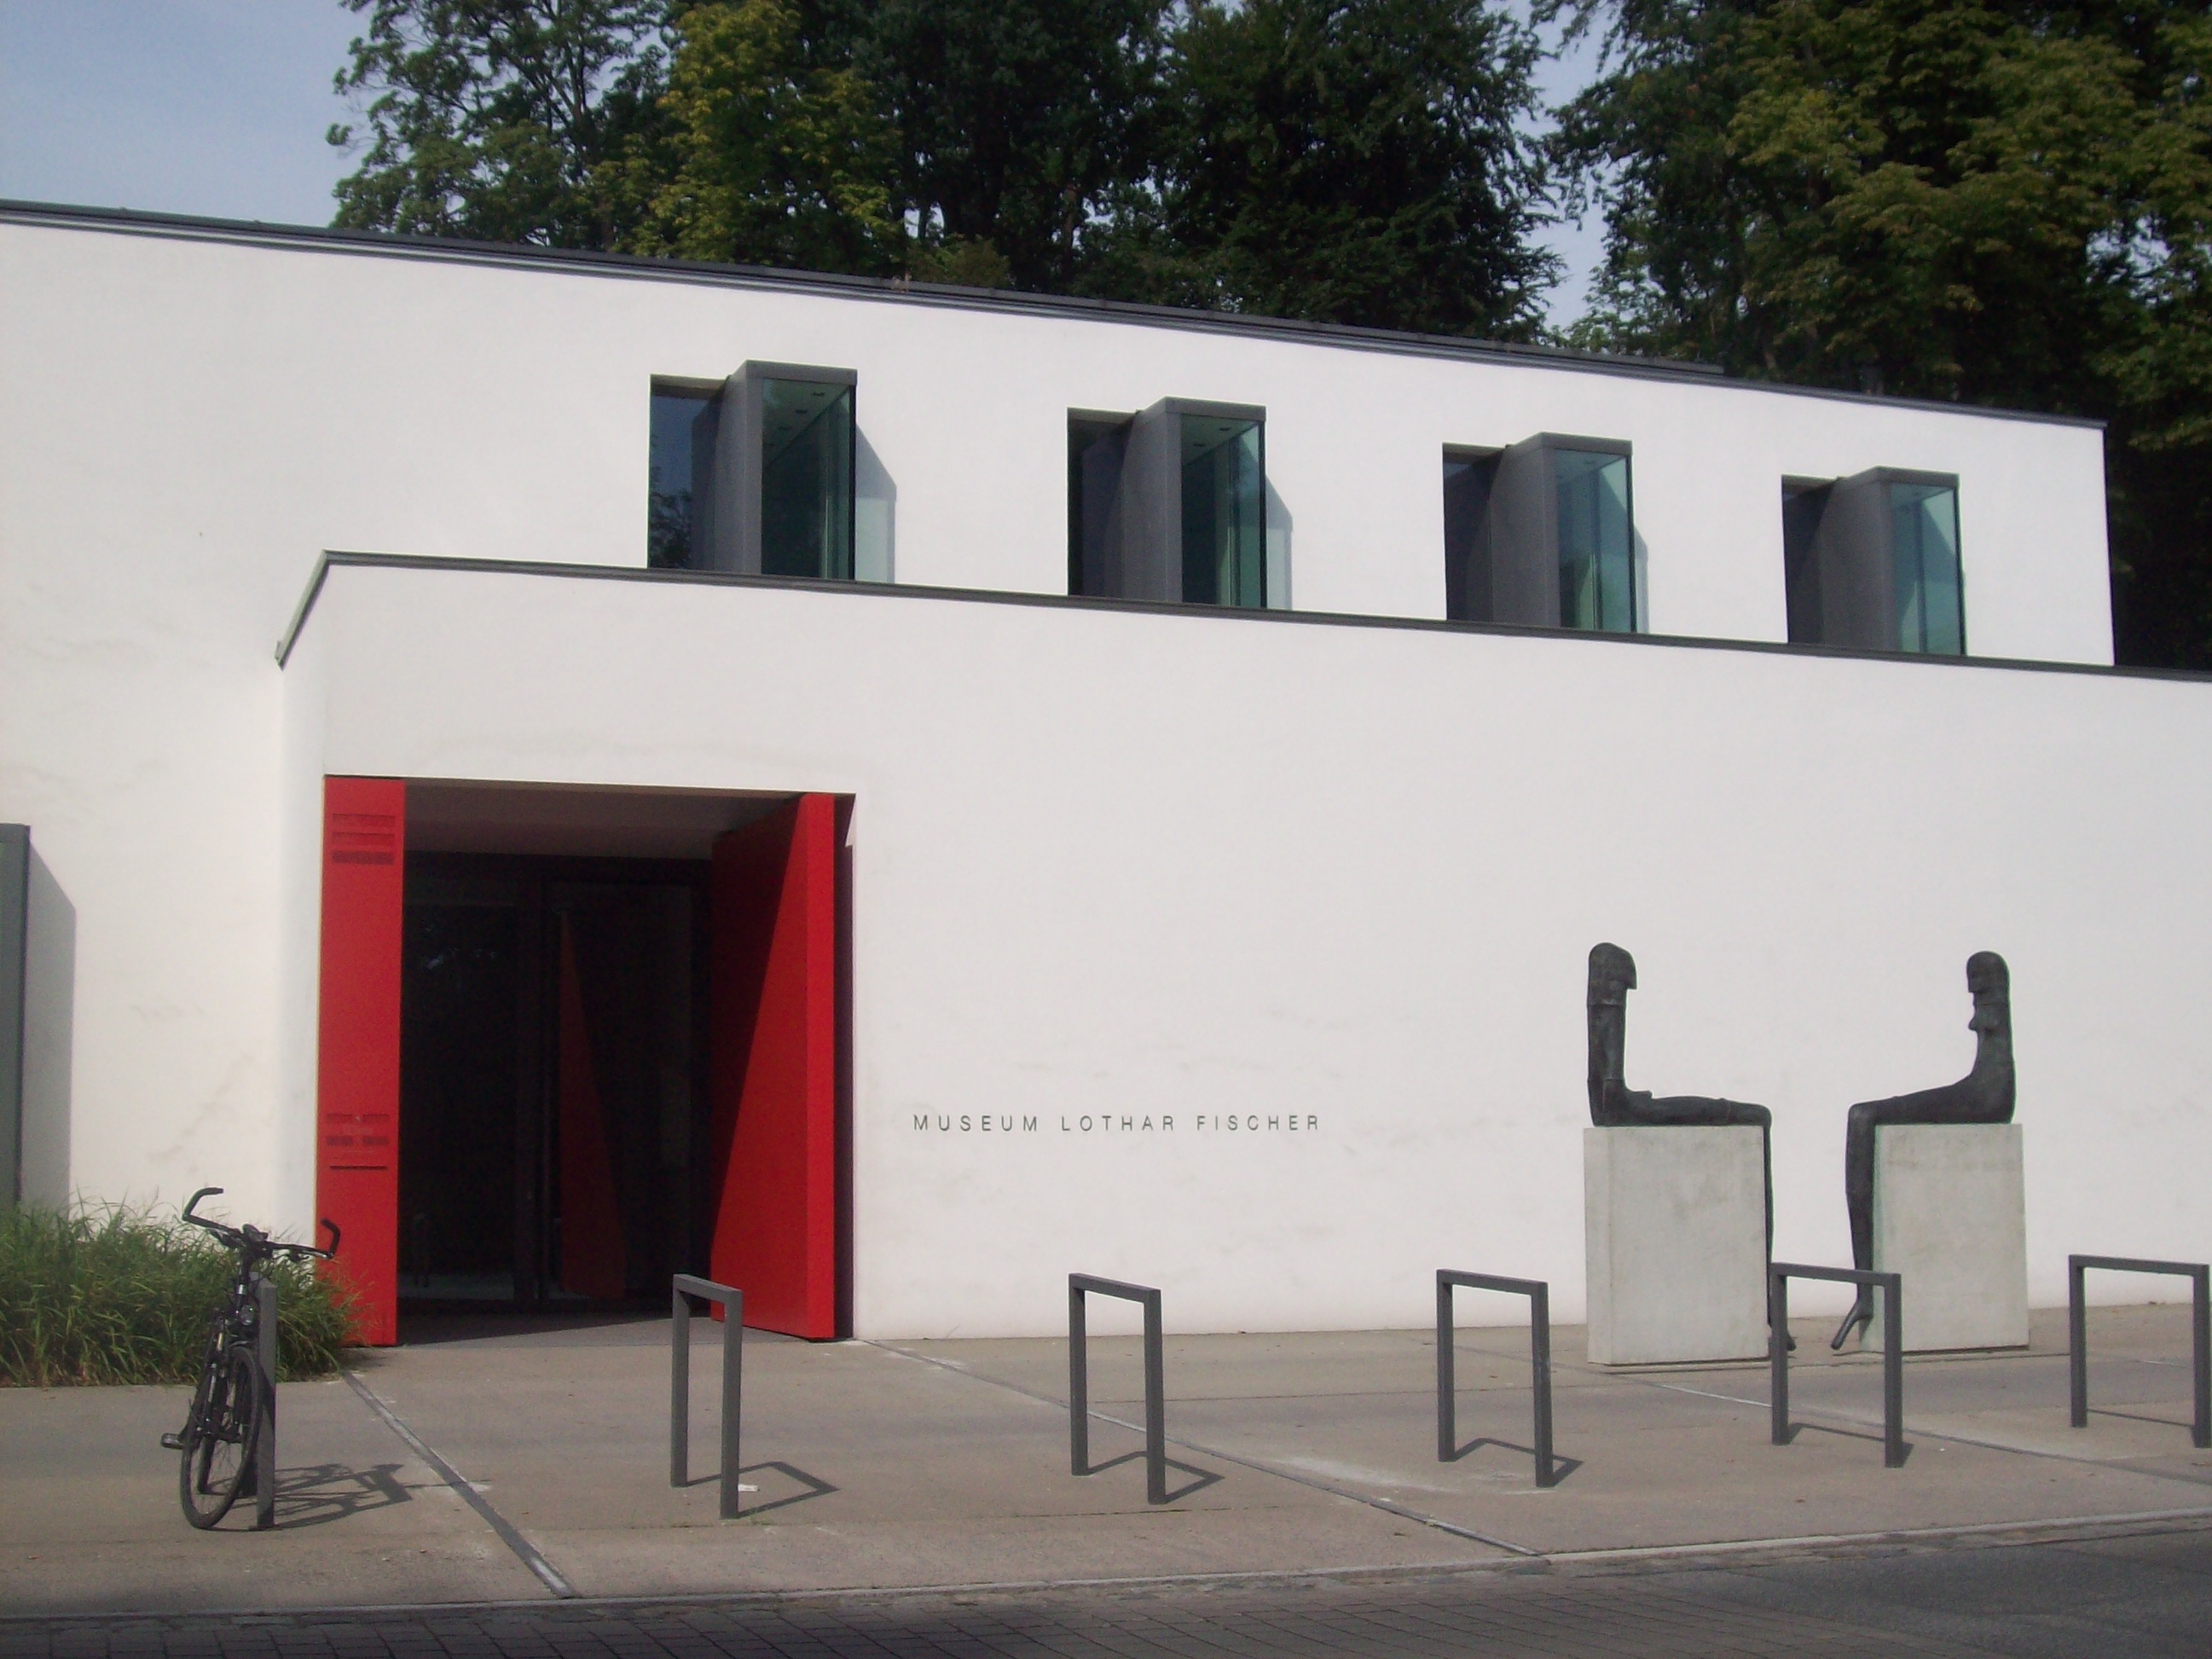 Museum Lothar Fischer in Neumarkt